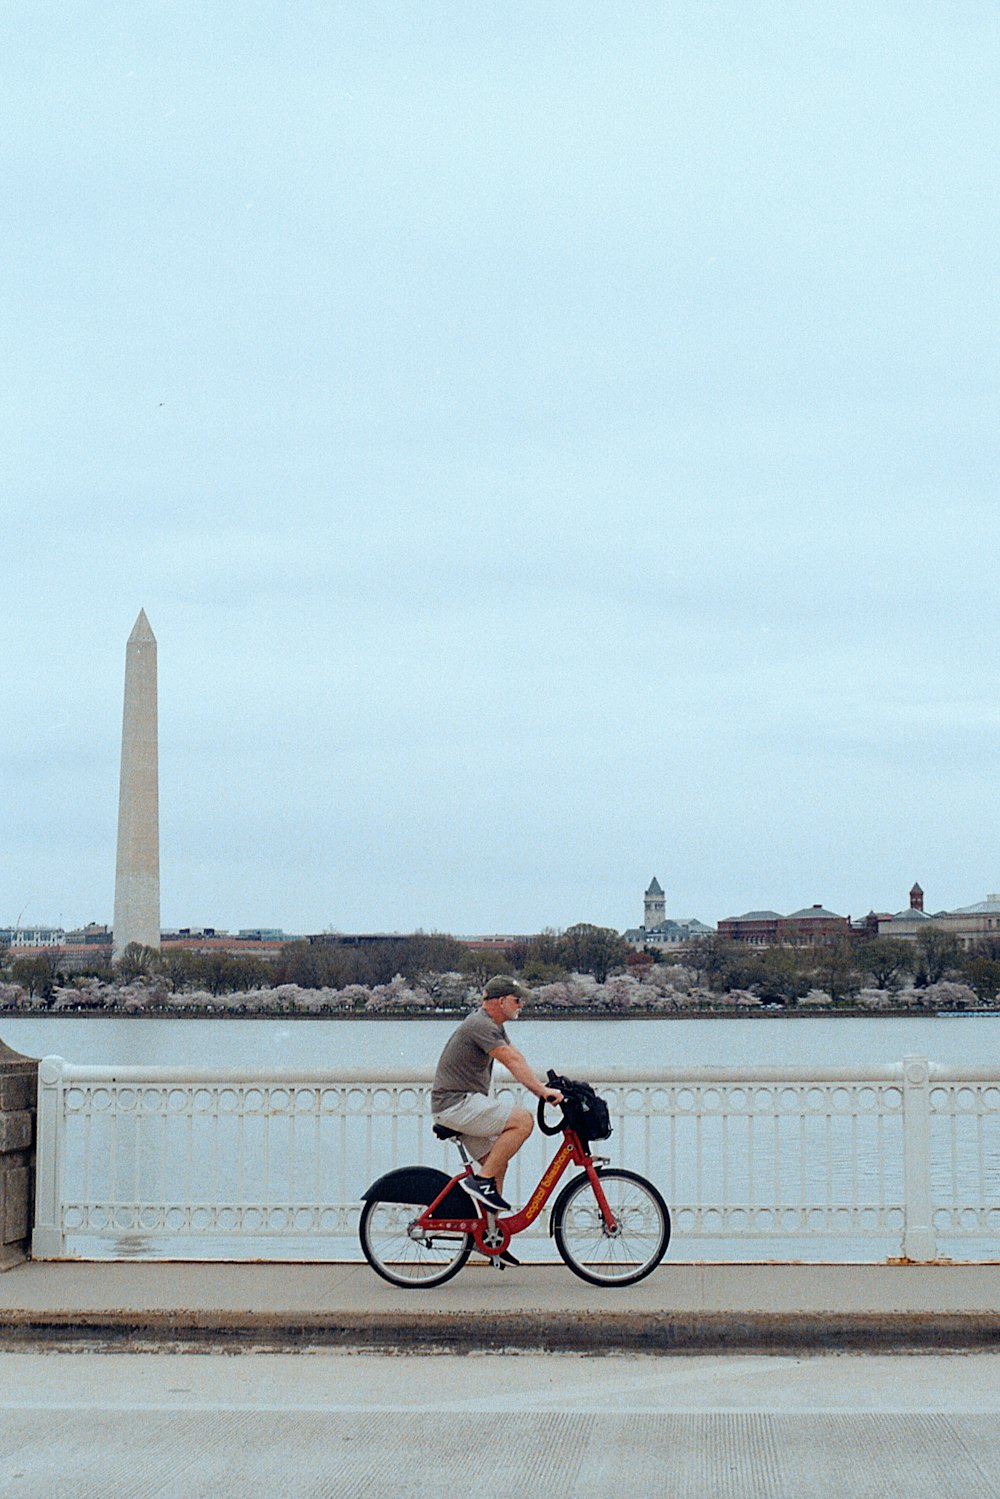 man in white shirt riding bicycle on bridge during daytime